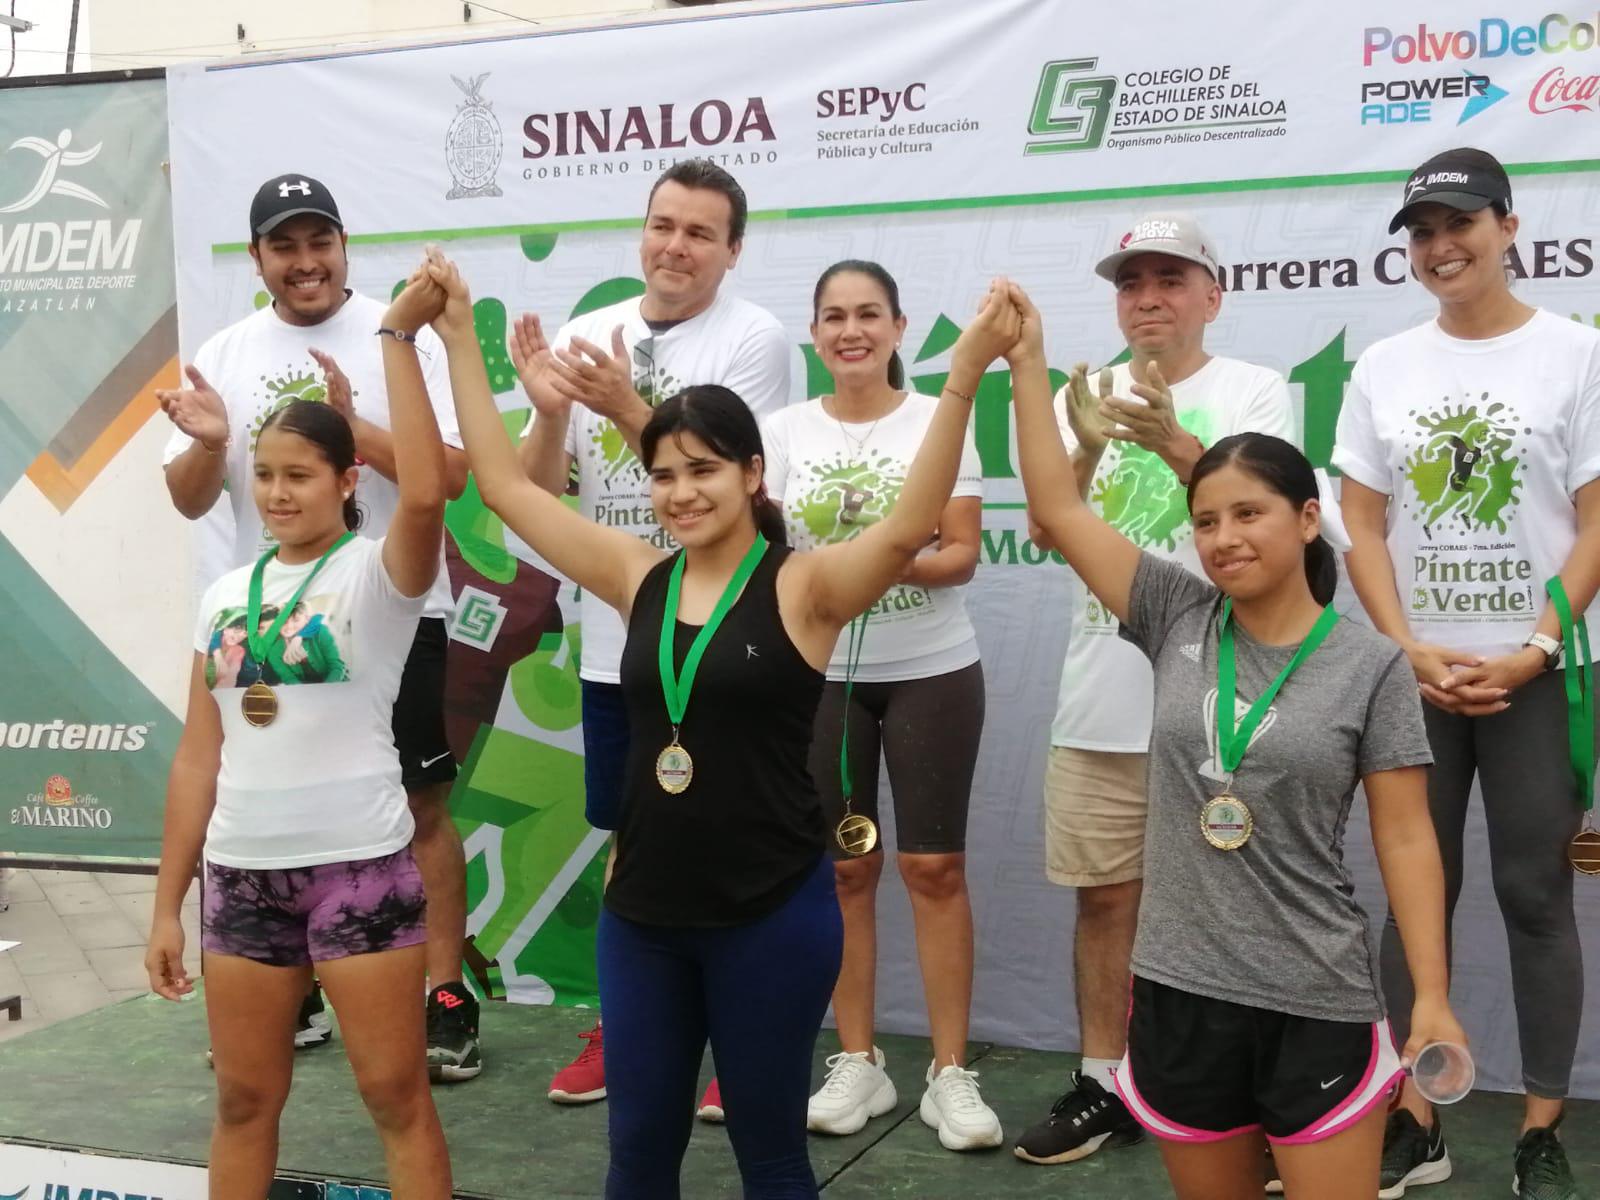 $!Aranza Silva y Pedro Castillo ganan en Mazatlán la Carrera Cobaes Píntate de Verde